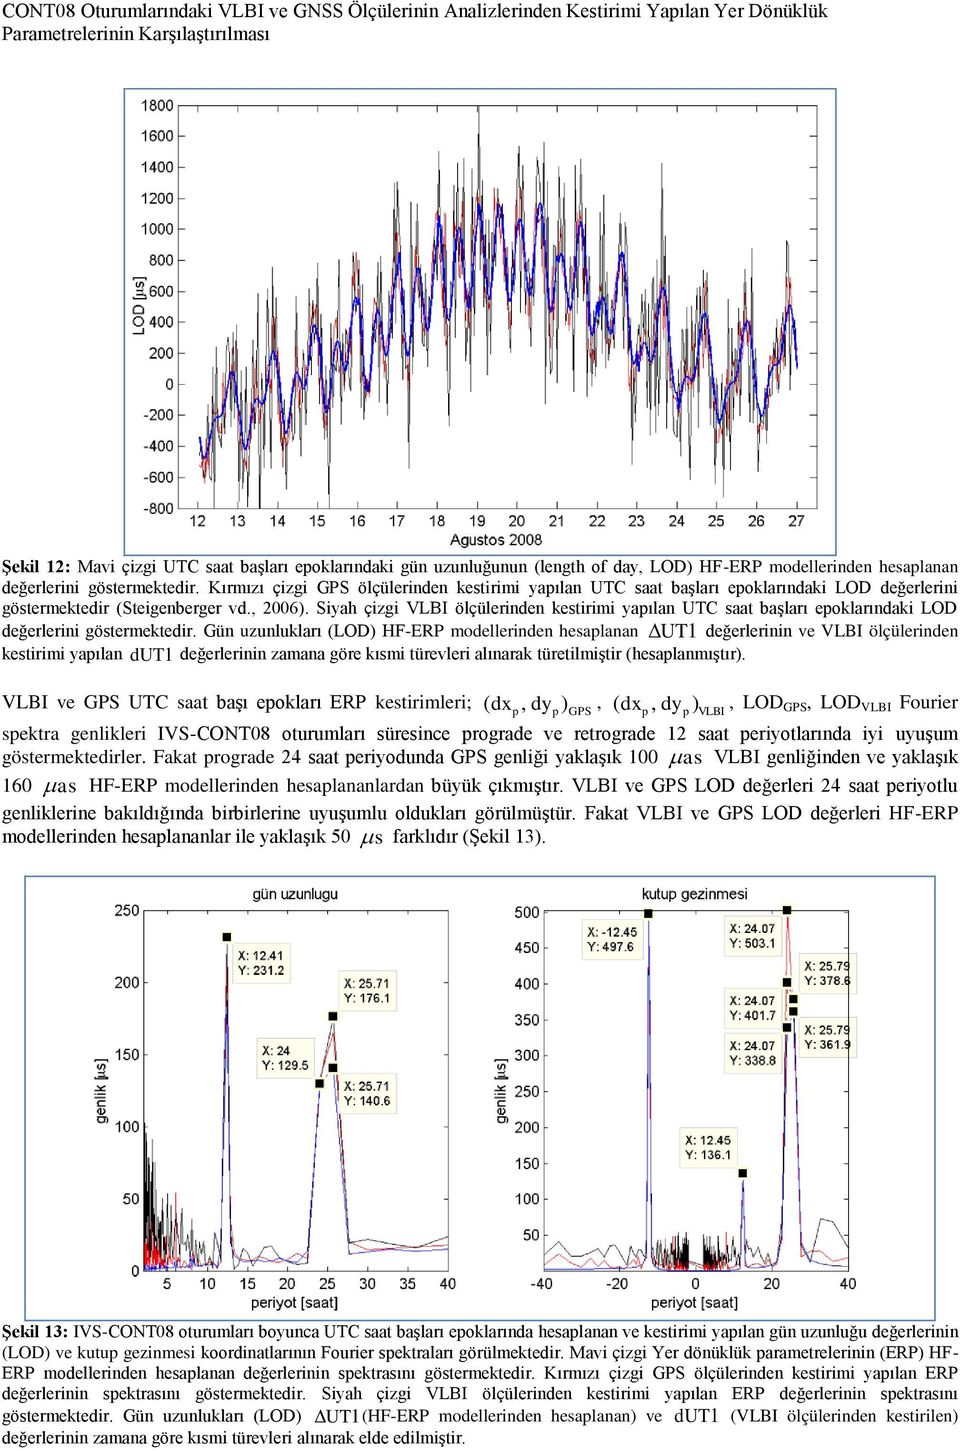 Siyah çizgi VLBI ölçülerinden kestirimi yaılan UTC saat başları eoklarındaki LOD değerlerini göstermektedir.